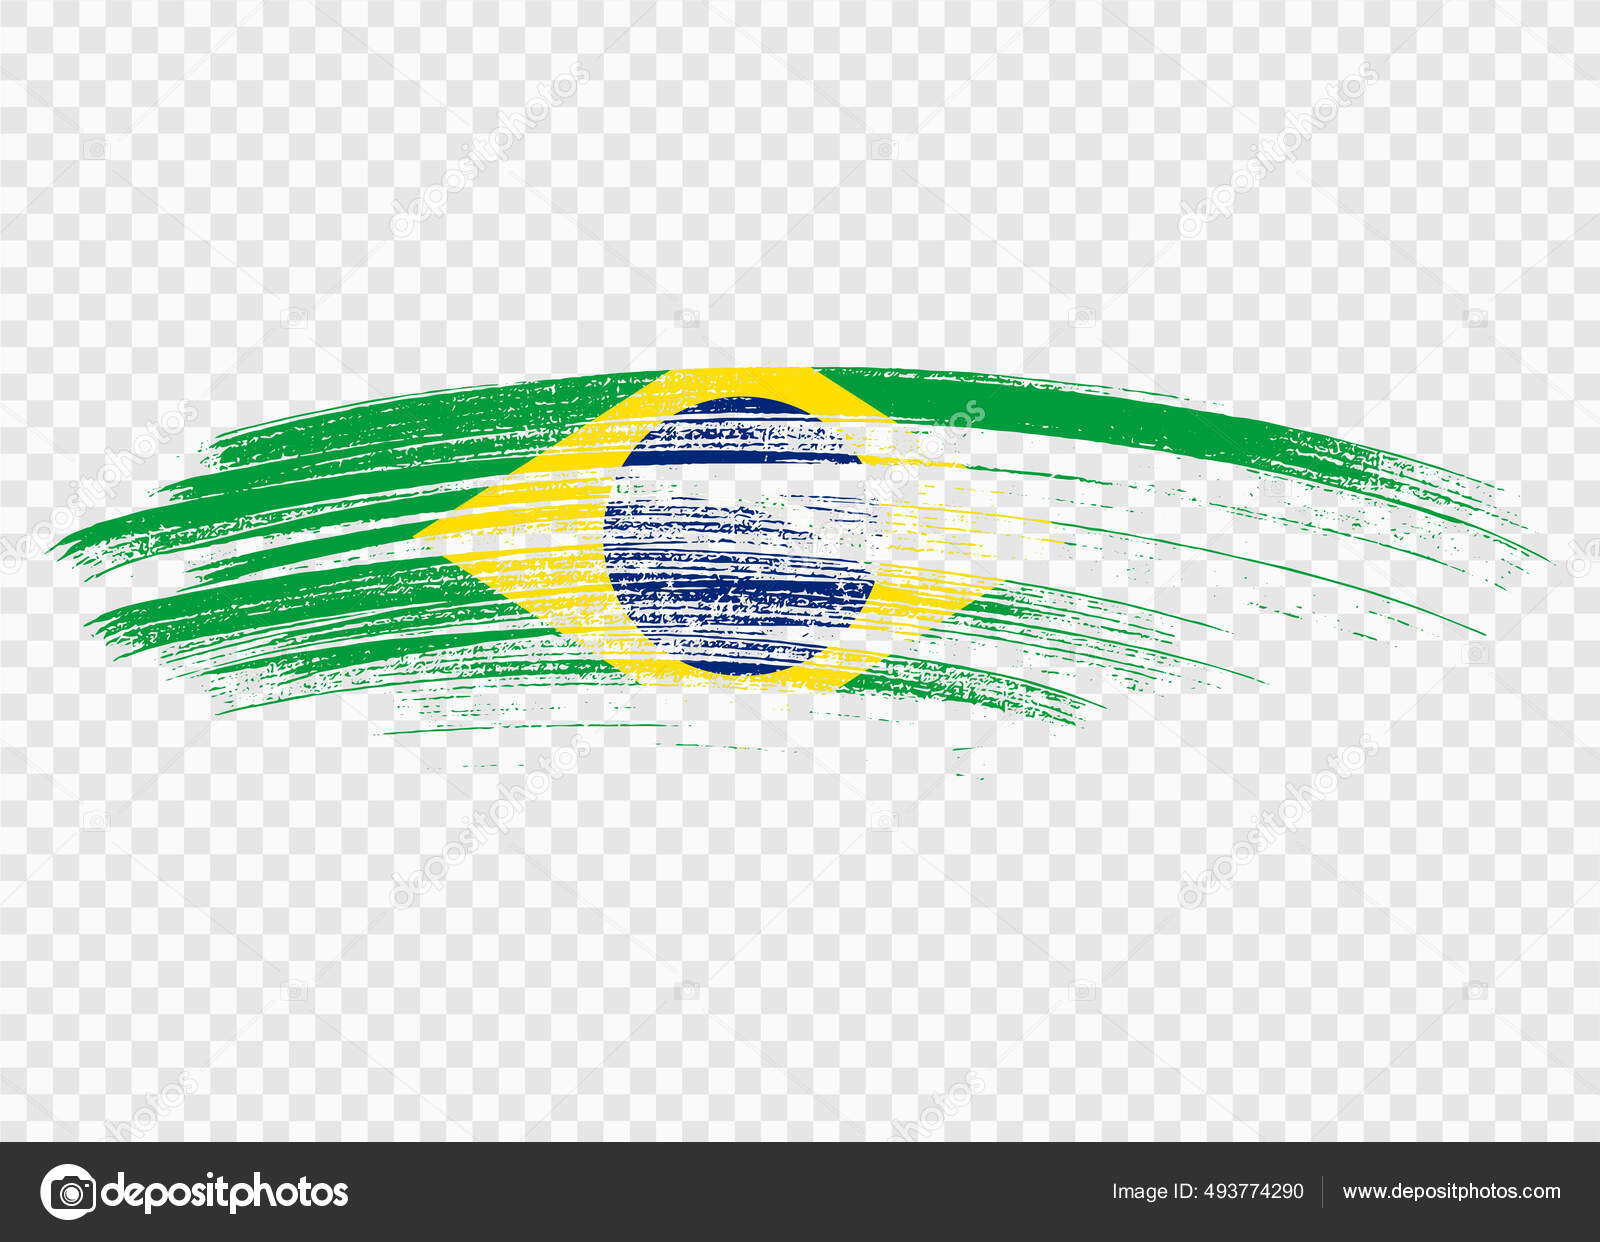 Bandeira Do Brasil PNG Transparent Images Free Download, Vector Files